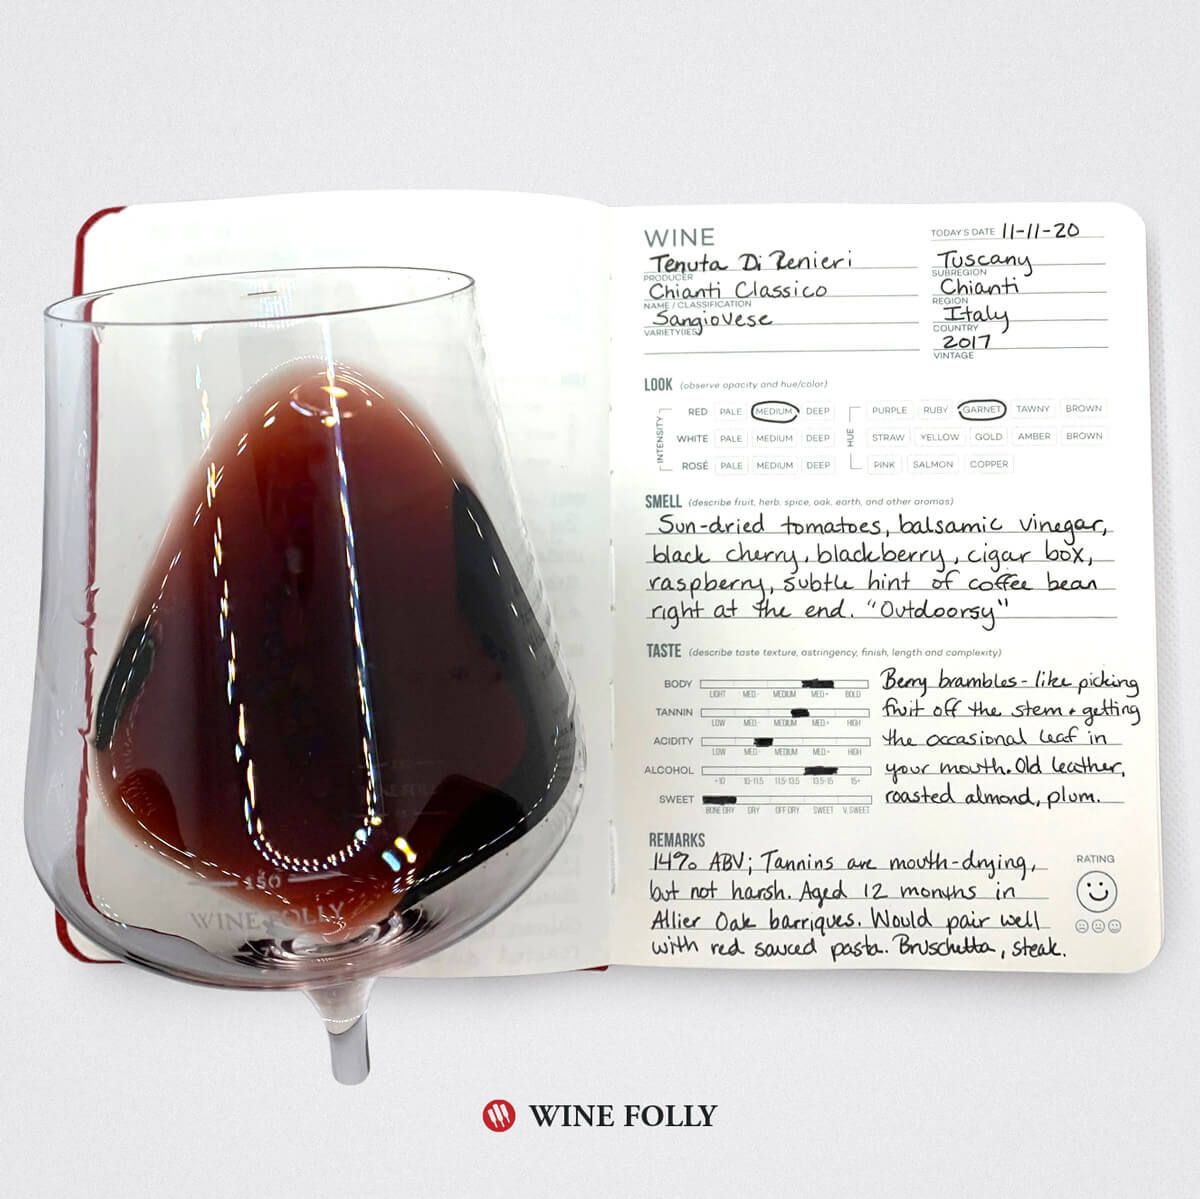 wijnglas-over-dagboek-proefnotities-sangiovese